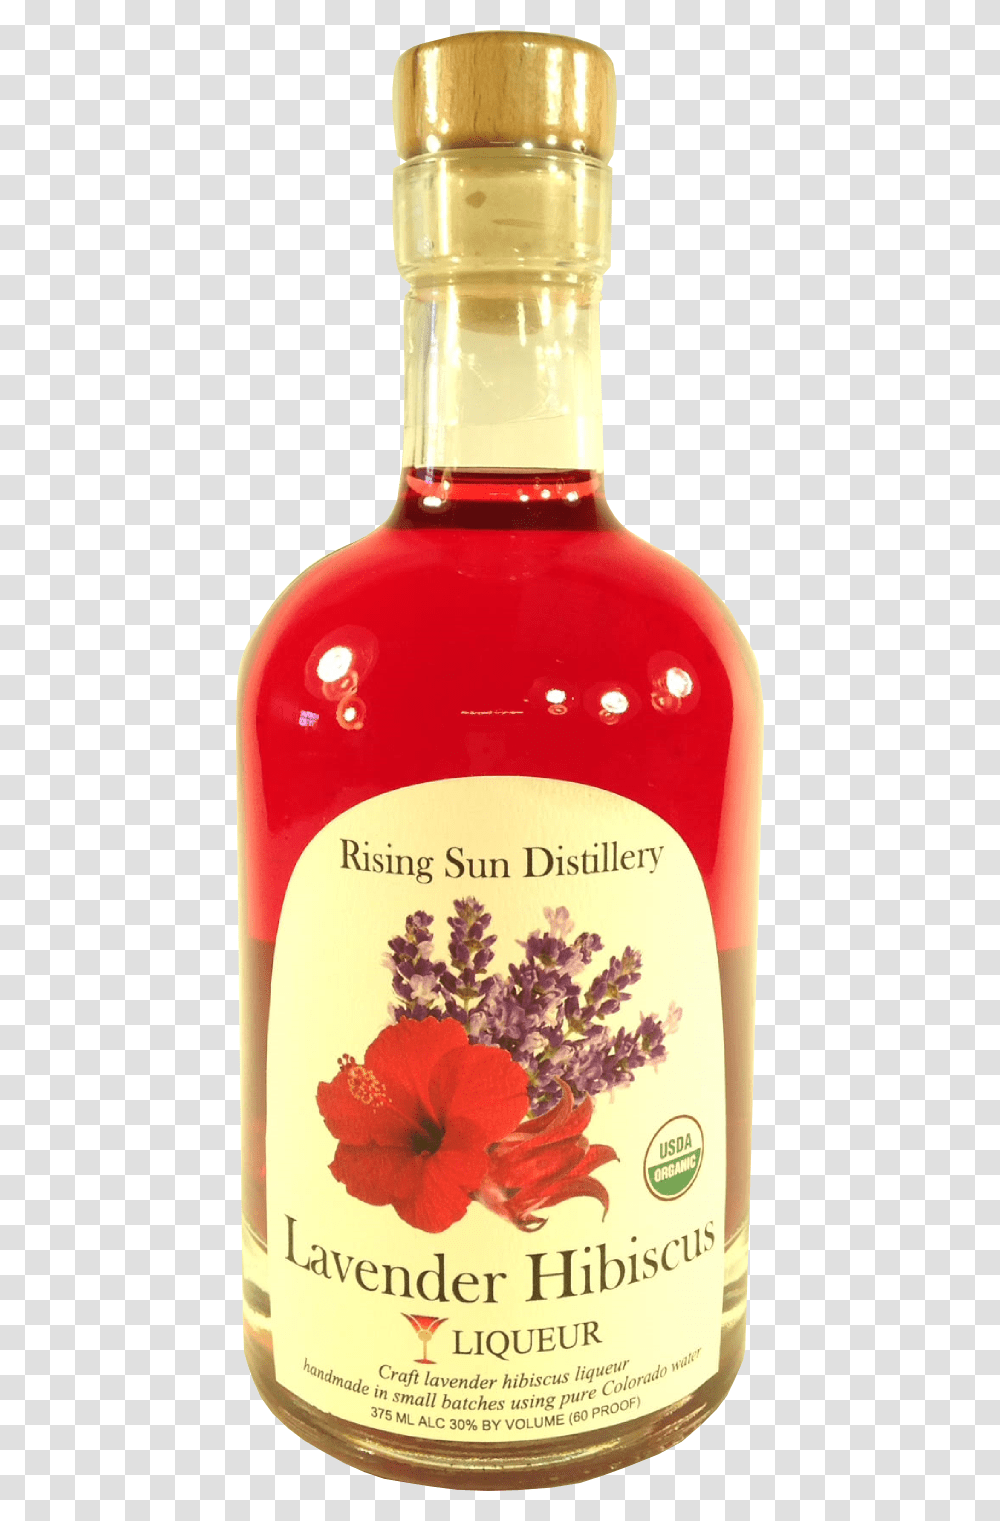 Lavender Hibiscus Liqueur, Bottle, Liquor, Alcohol, Beverage Transparent Png